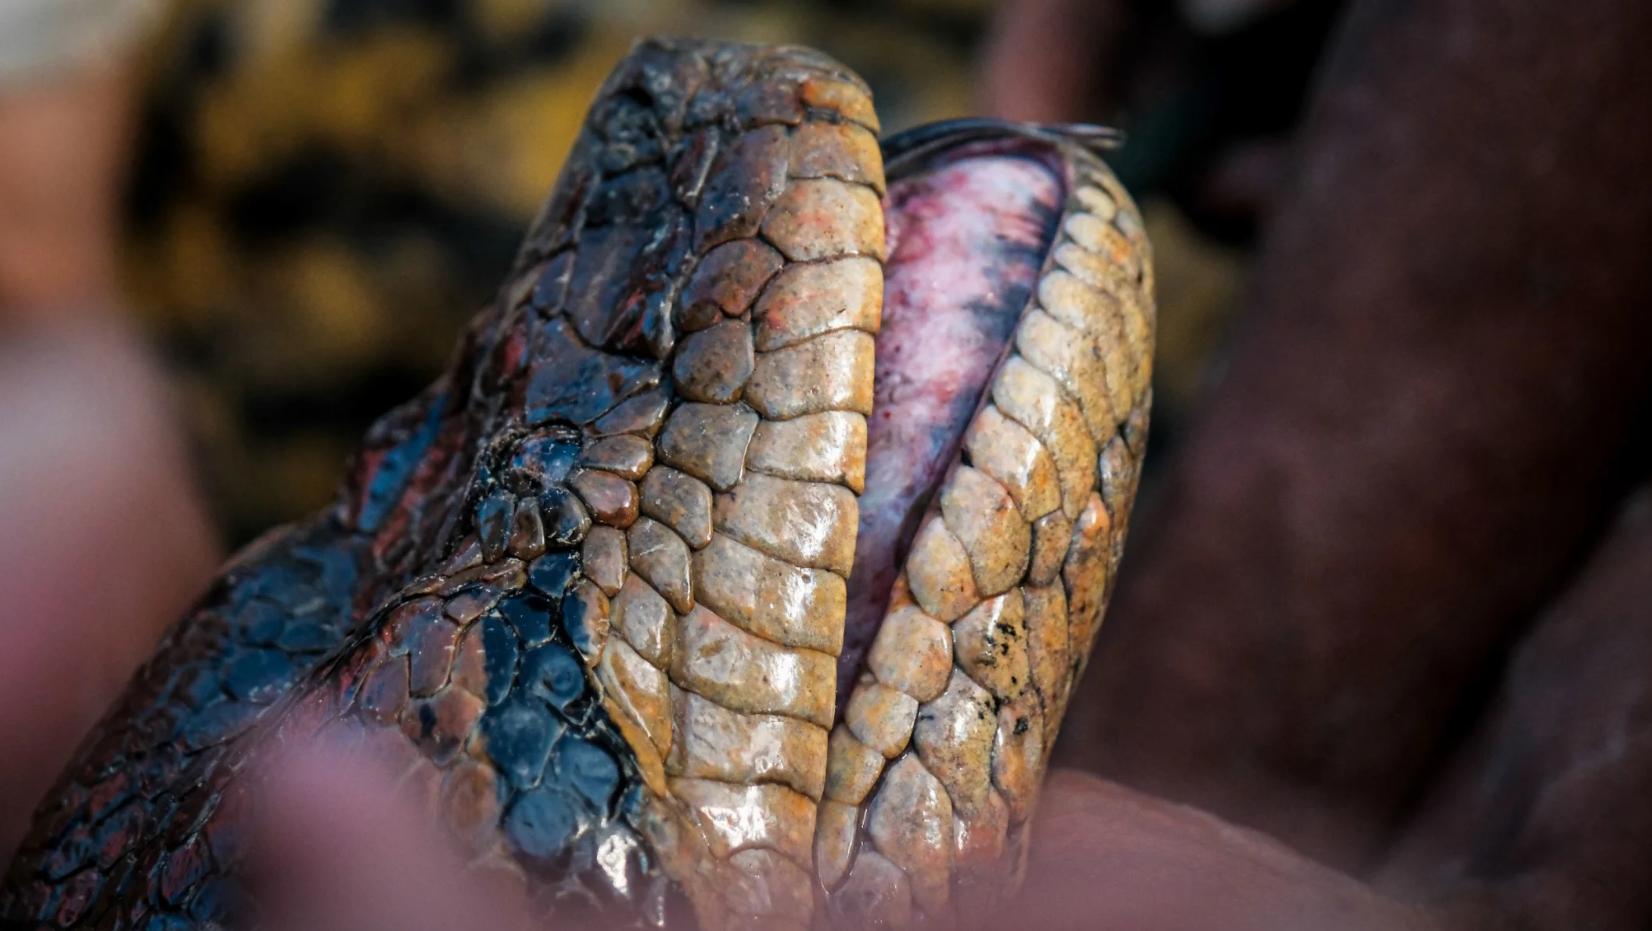 gigantesca anaconda scoperta in amazzonia: le foto. è in grado di mangiare un cervo